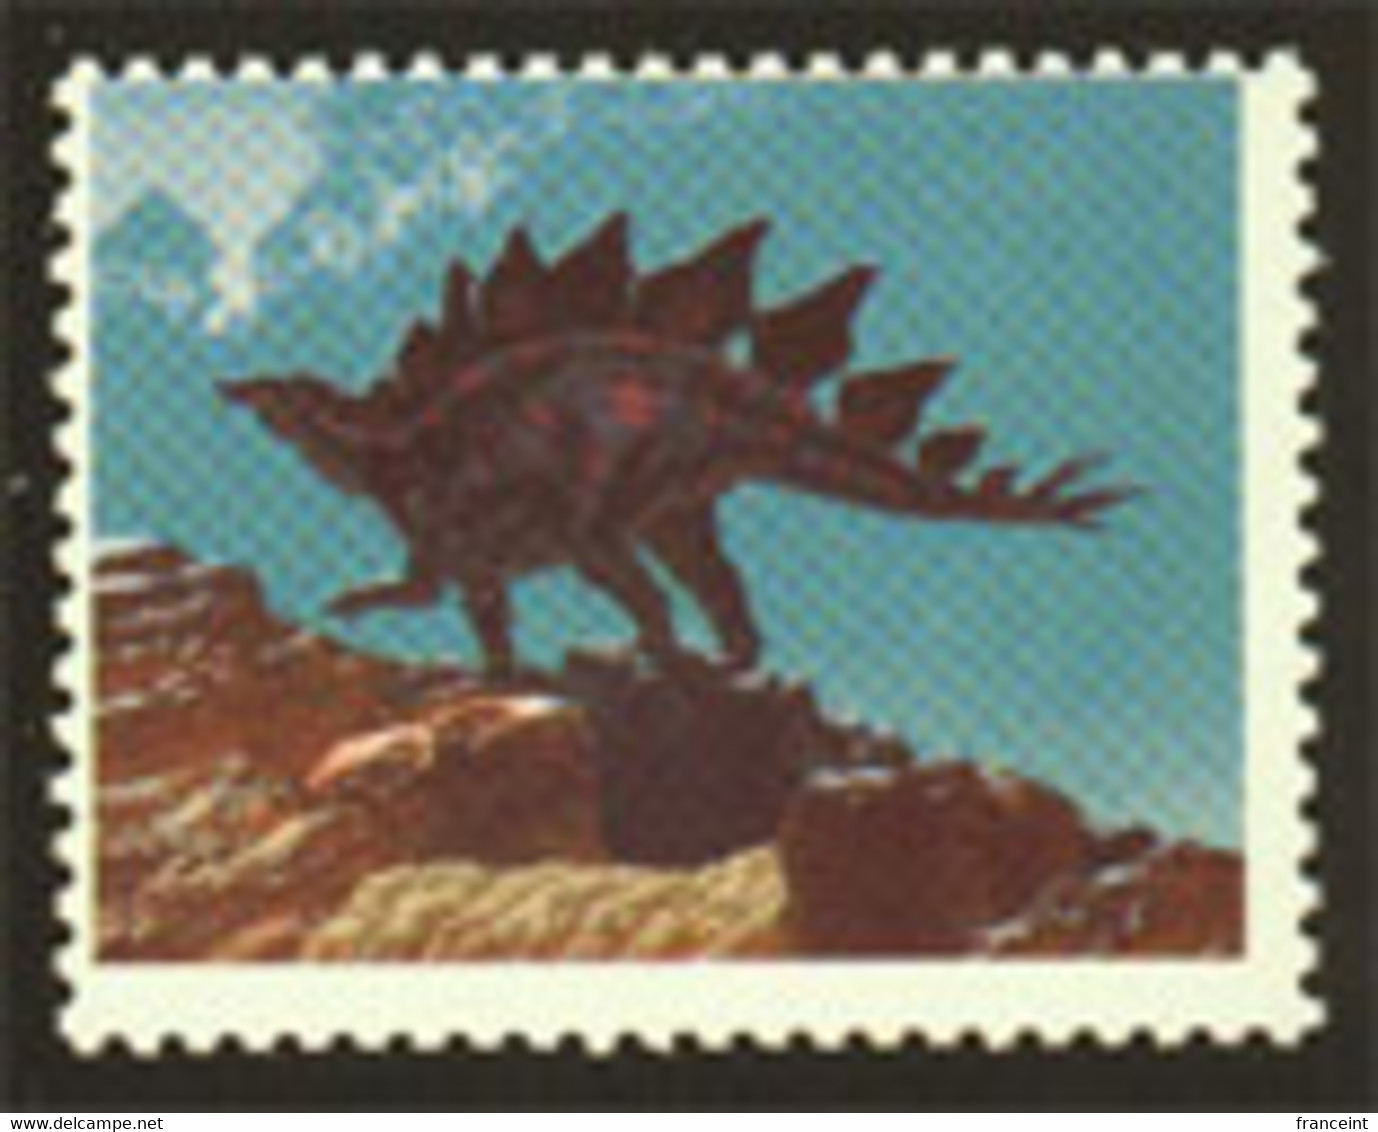 ETATS UNIS (1989a) Stégosaure. Scott No 2424. Superbe Variété: Sans La Couleur Noire. - Varietà, Errori & Curiosità